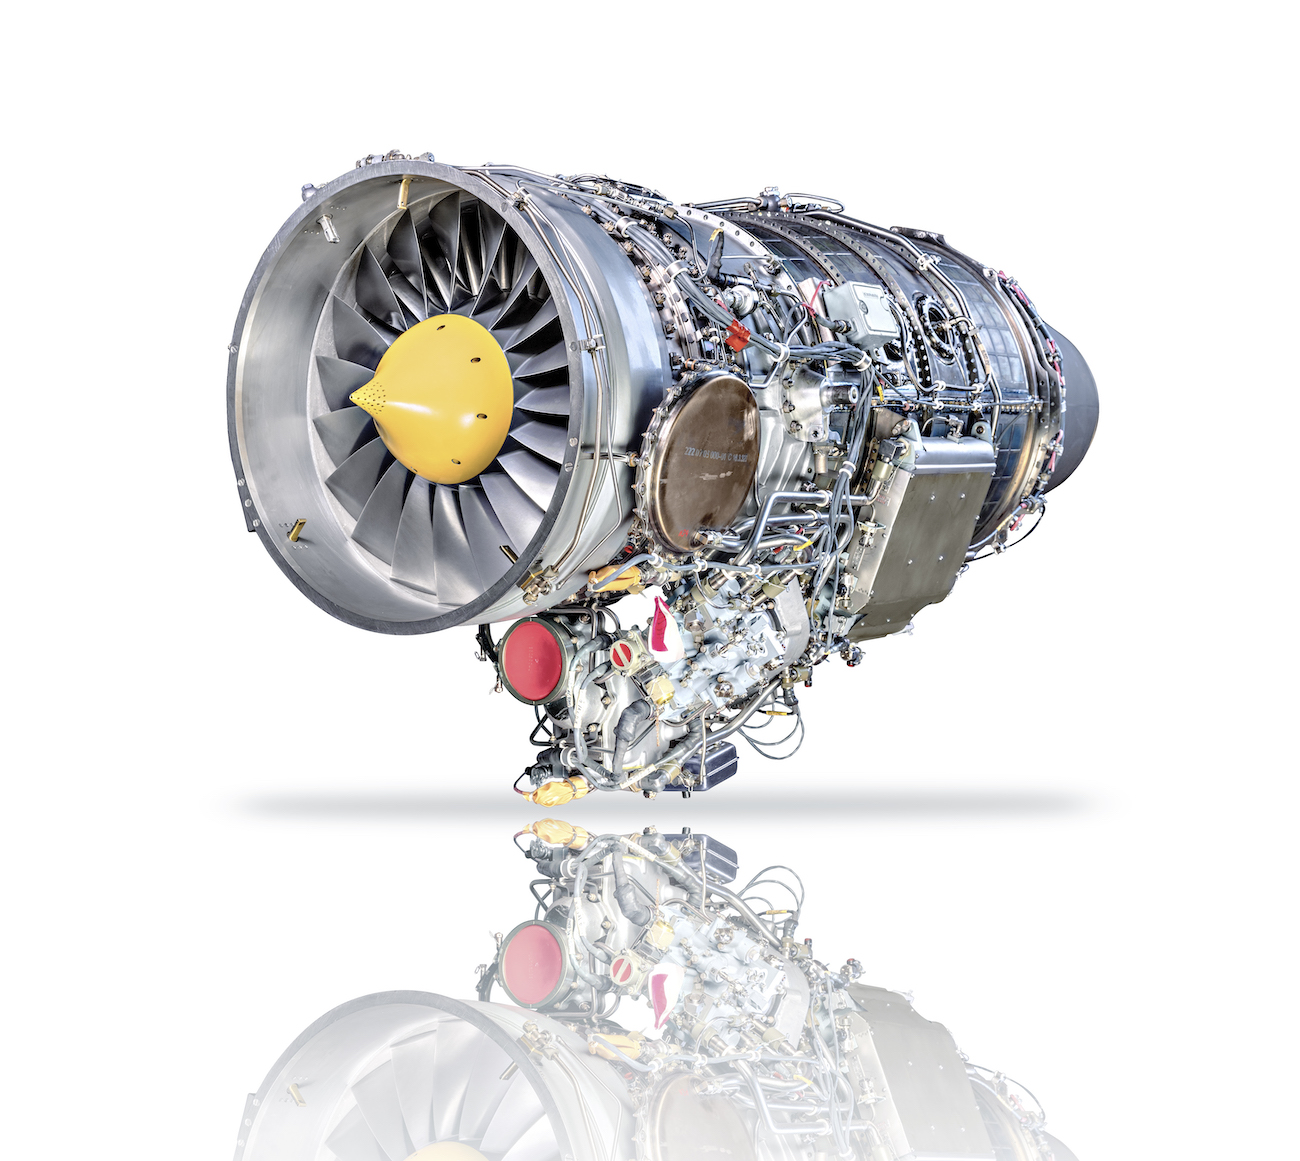 ОДК и ЦИАМ создадут цифровой двойник двигателя АИ-222-25